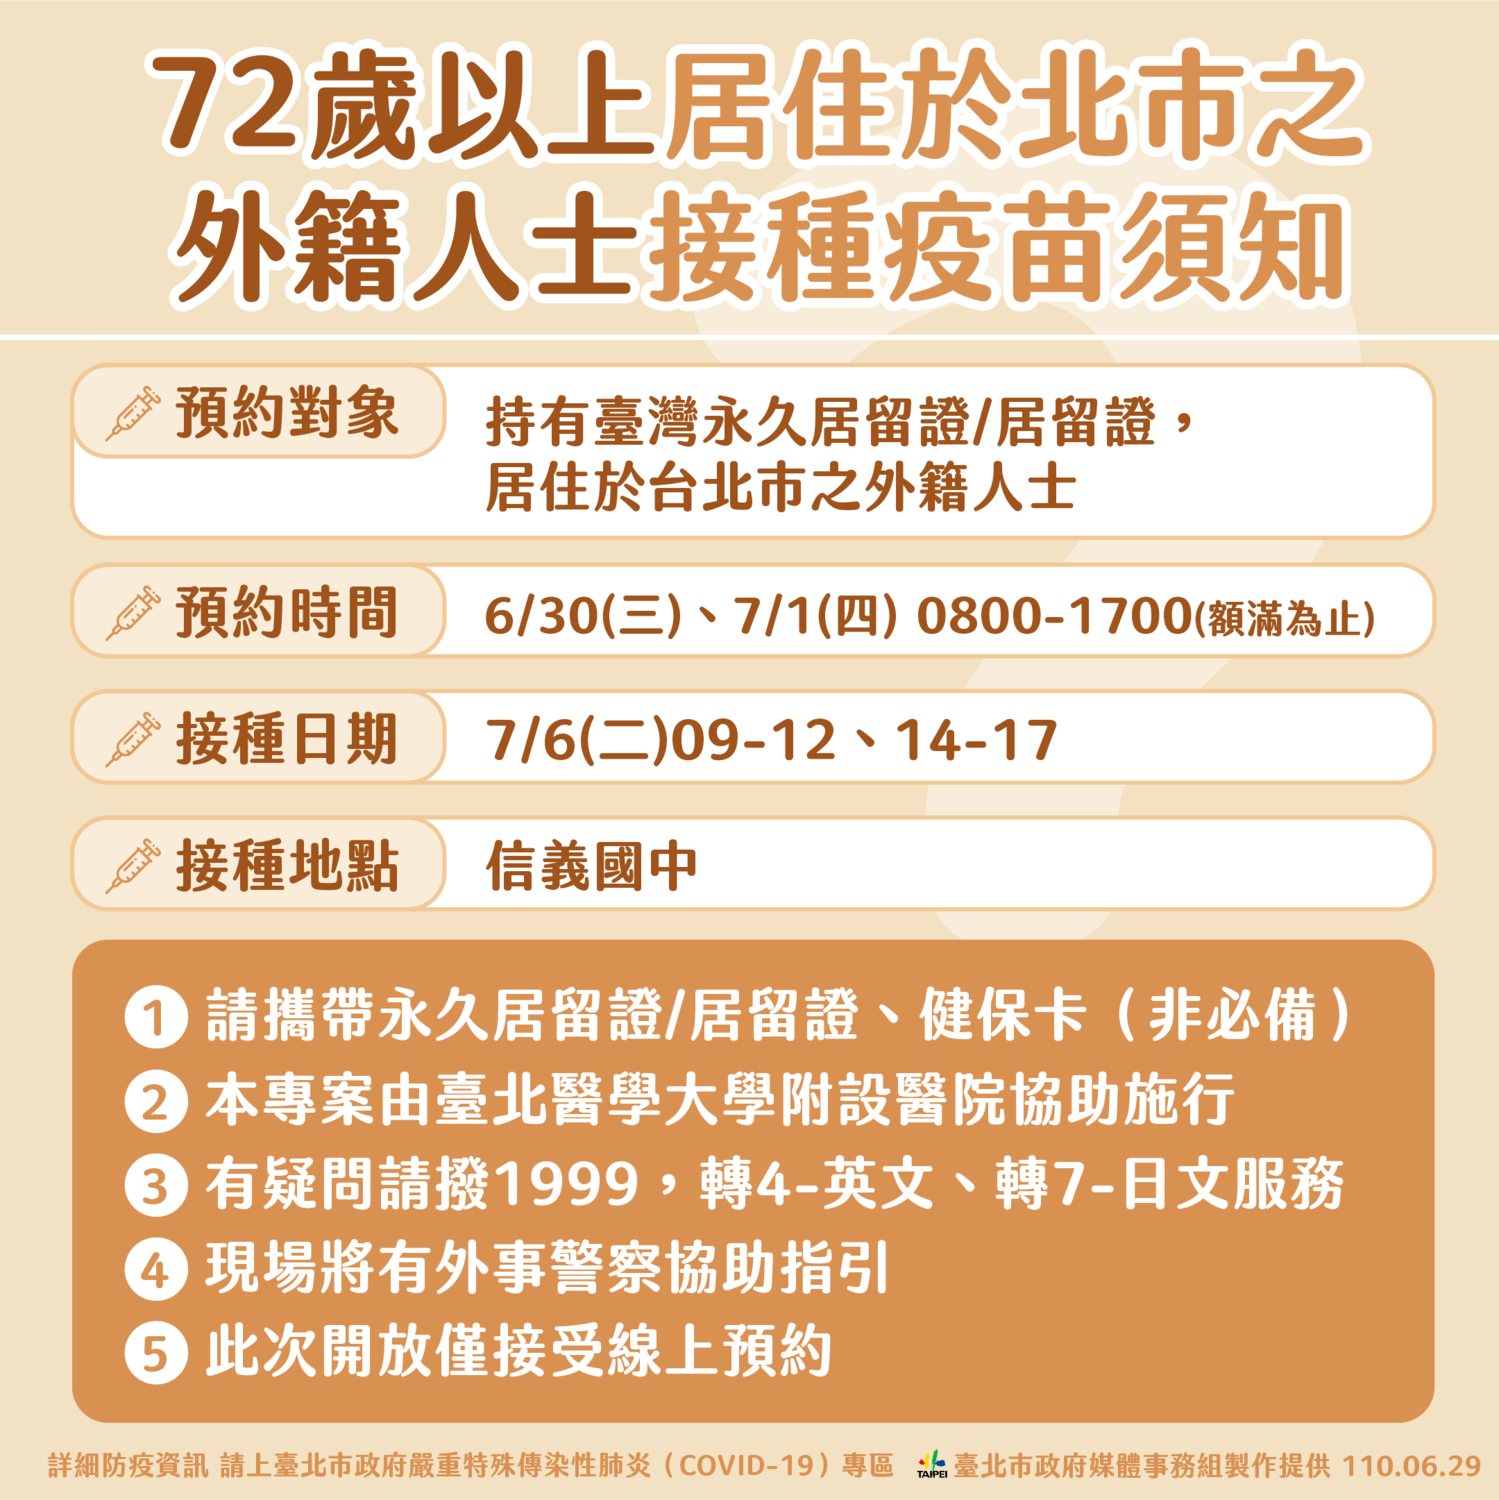 Warga negara asing dapat mendaftarkan diri untuk vaksinasi pada tanggal 30 Juni dan 1 Juli. Sumber: Pemerintah Kota Taipei